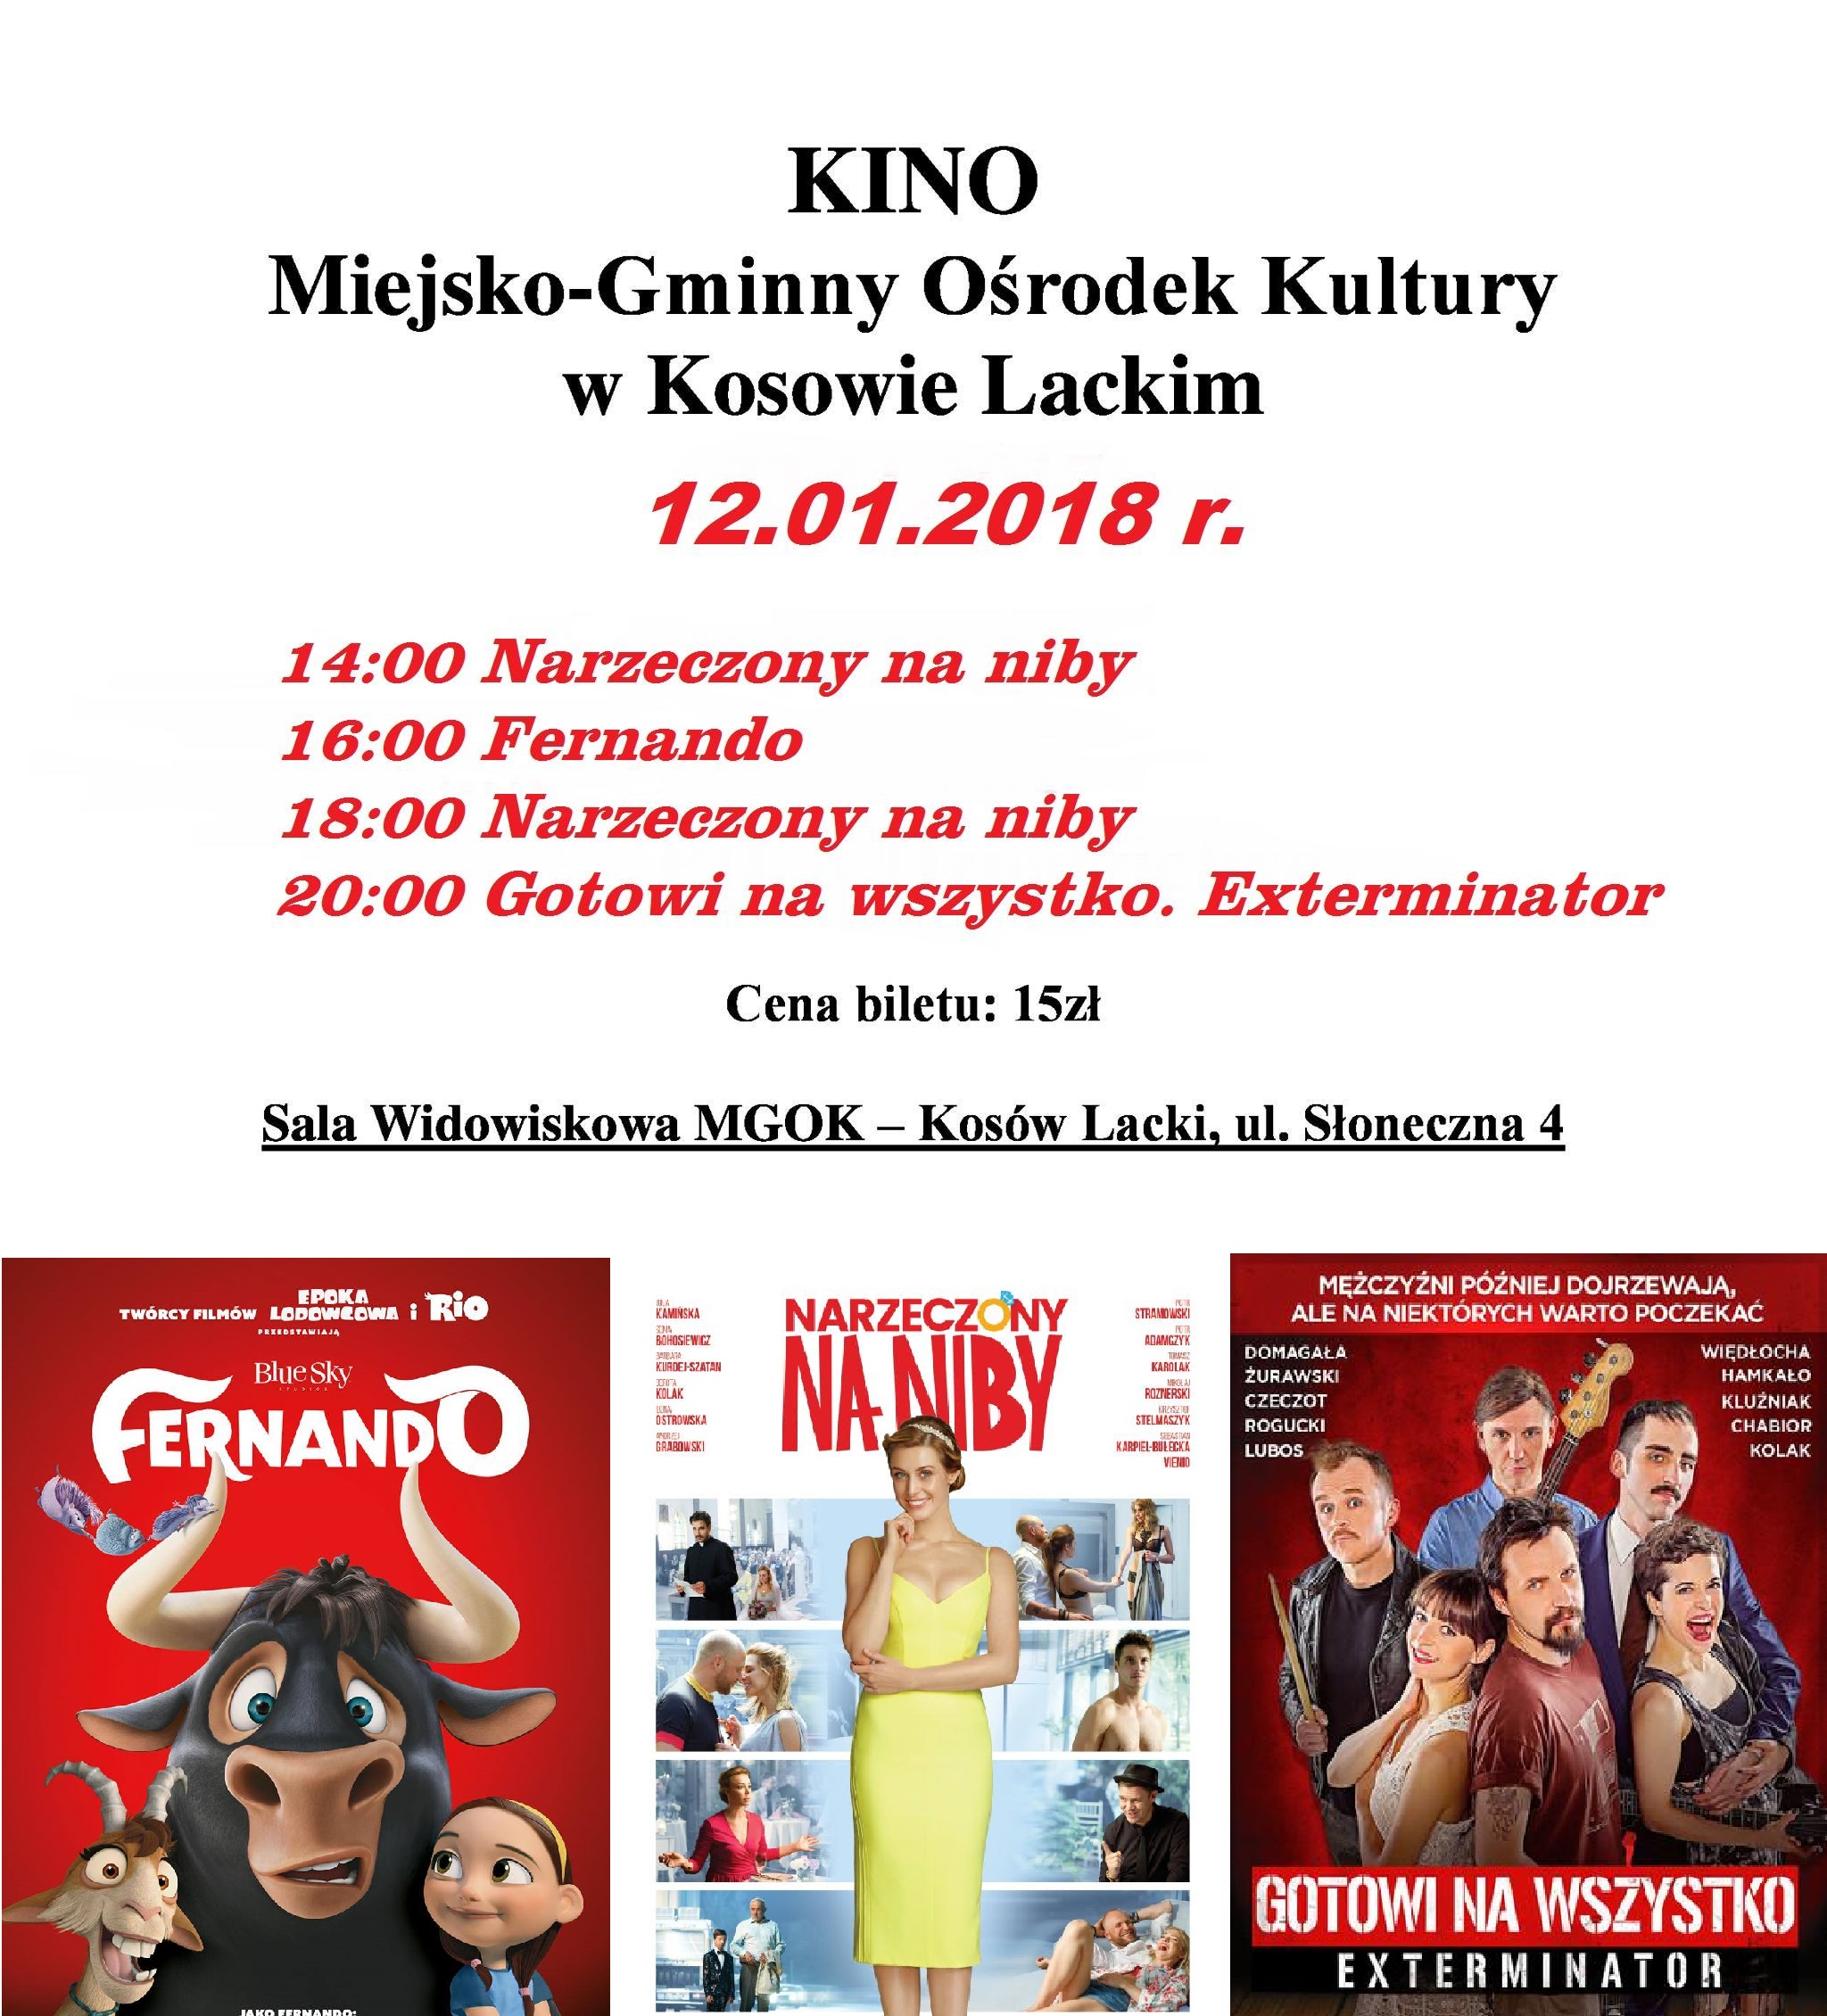 Kino MGOK 2018